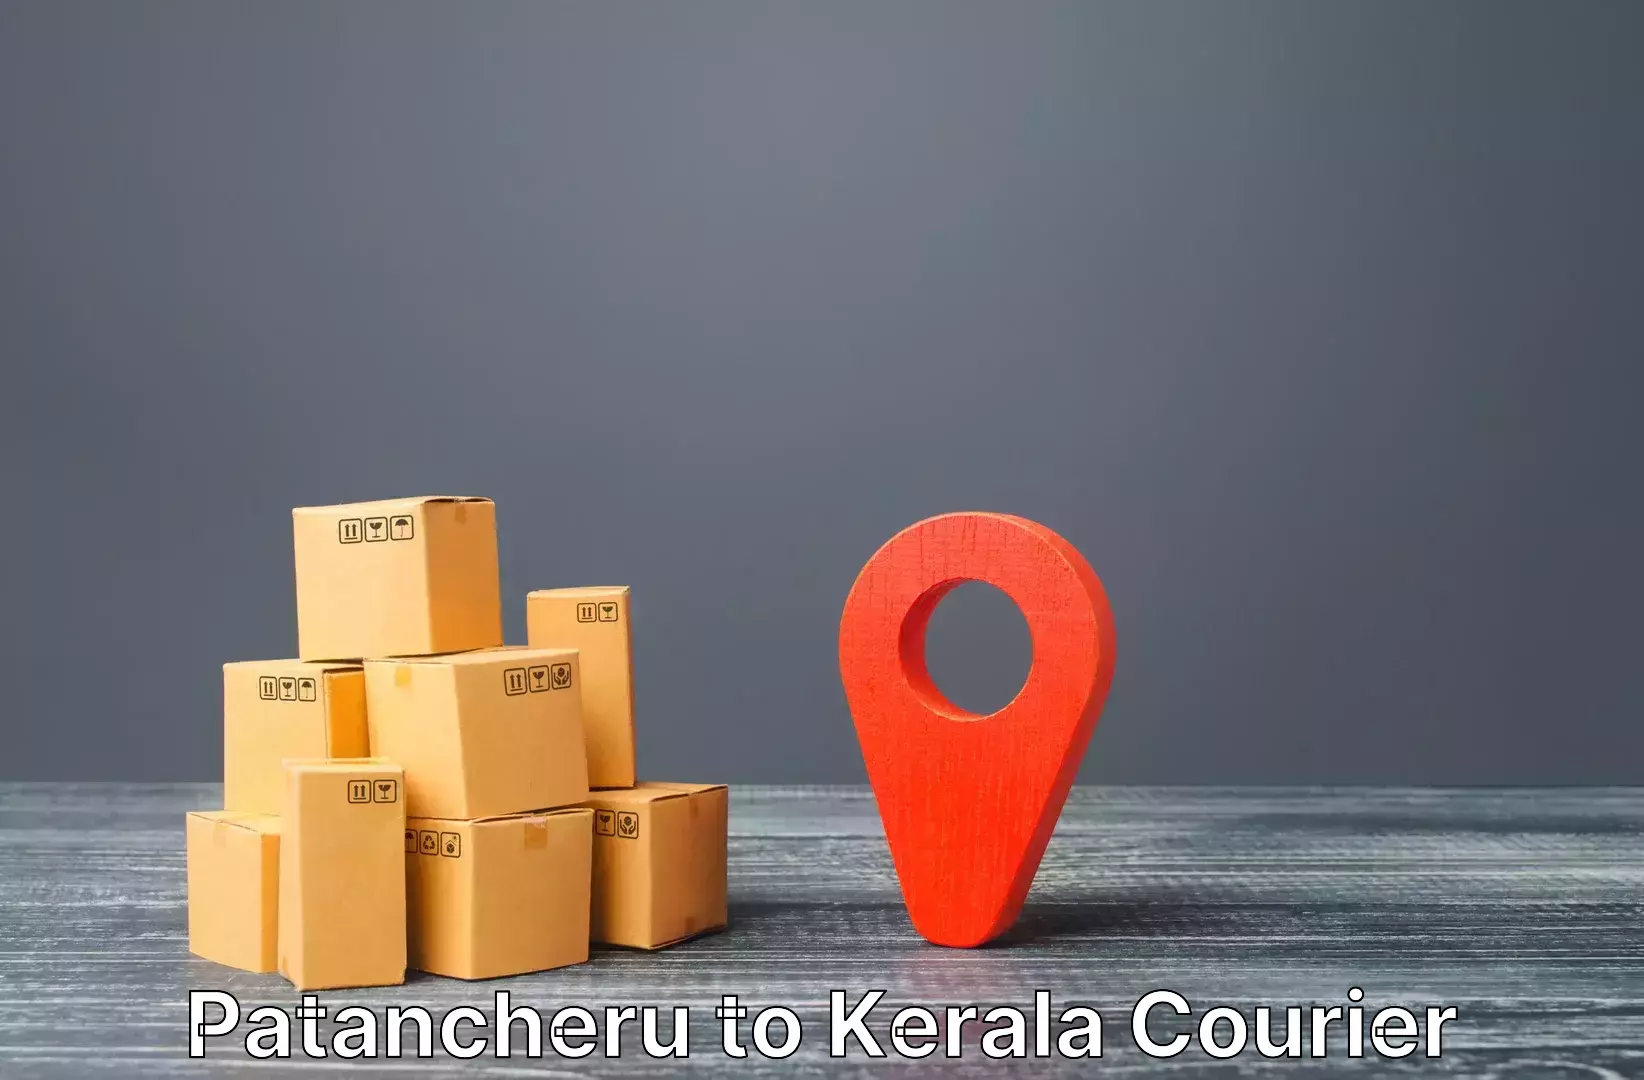 Door-to-door baggage service Patancheru to Kerala